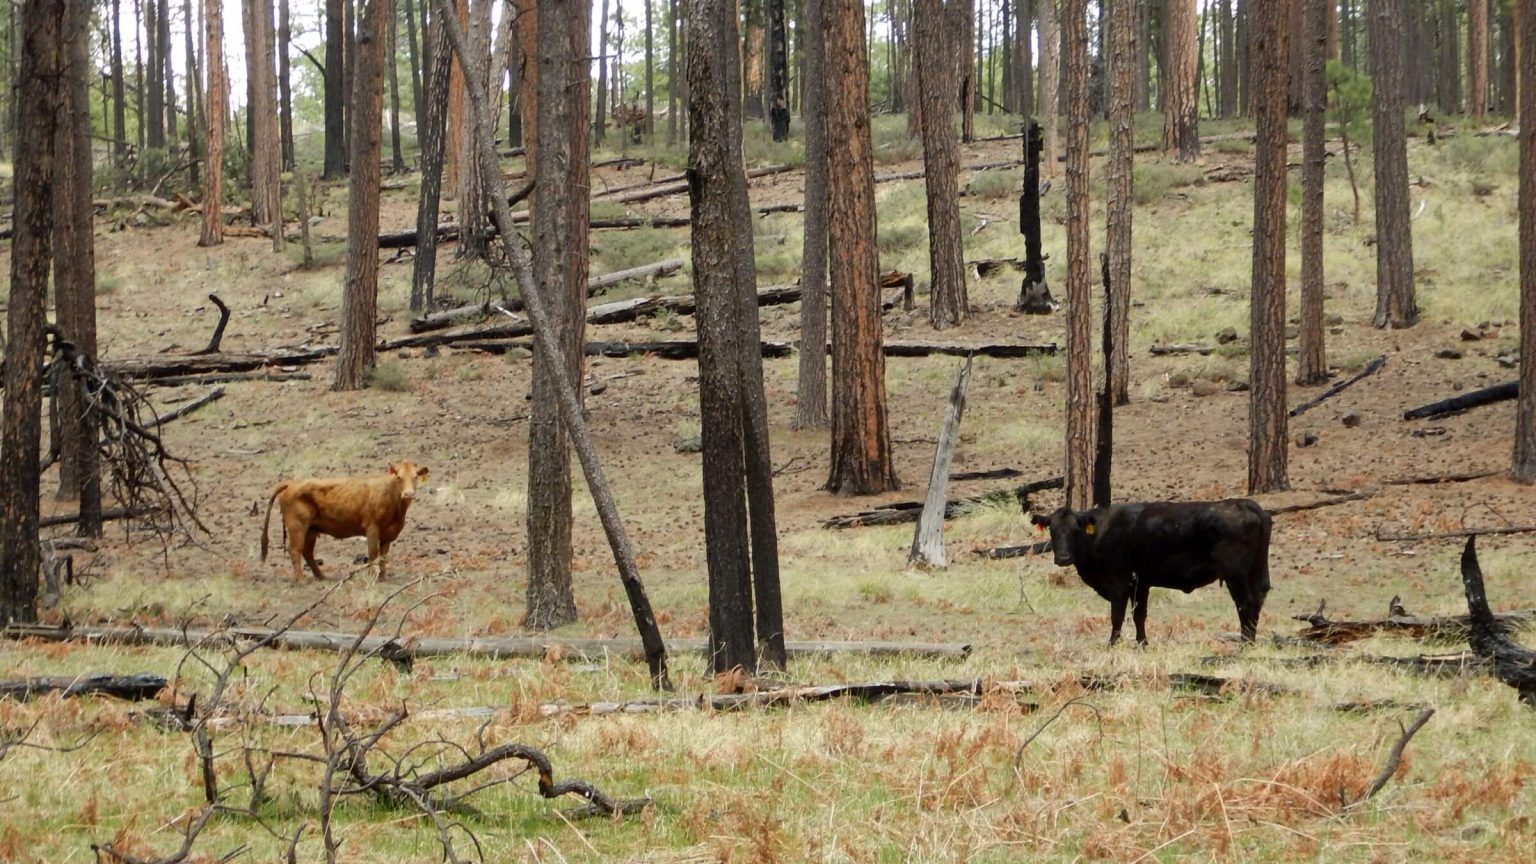 Blue Range Primitive Area, cattle common, April